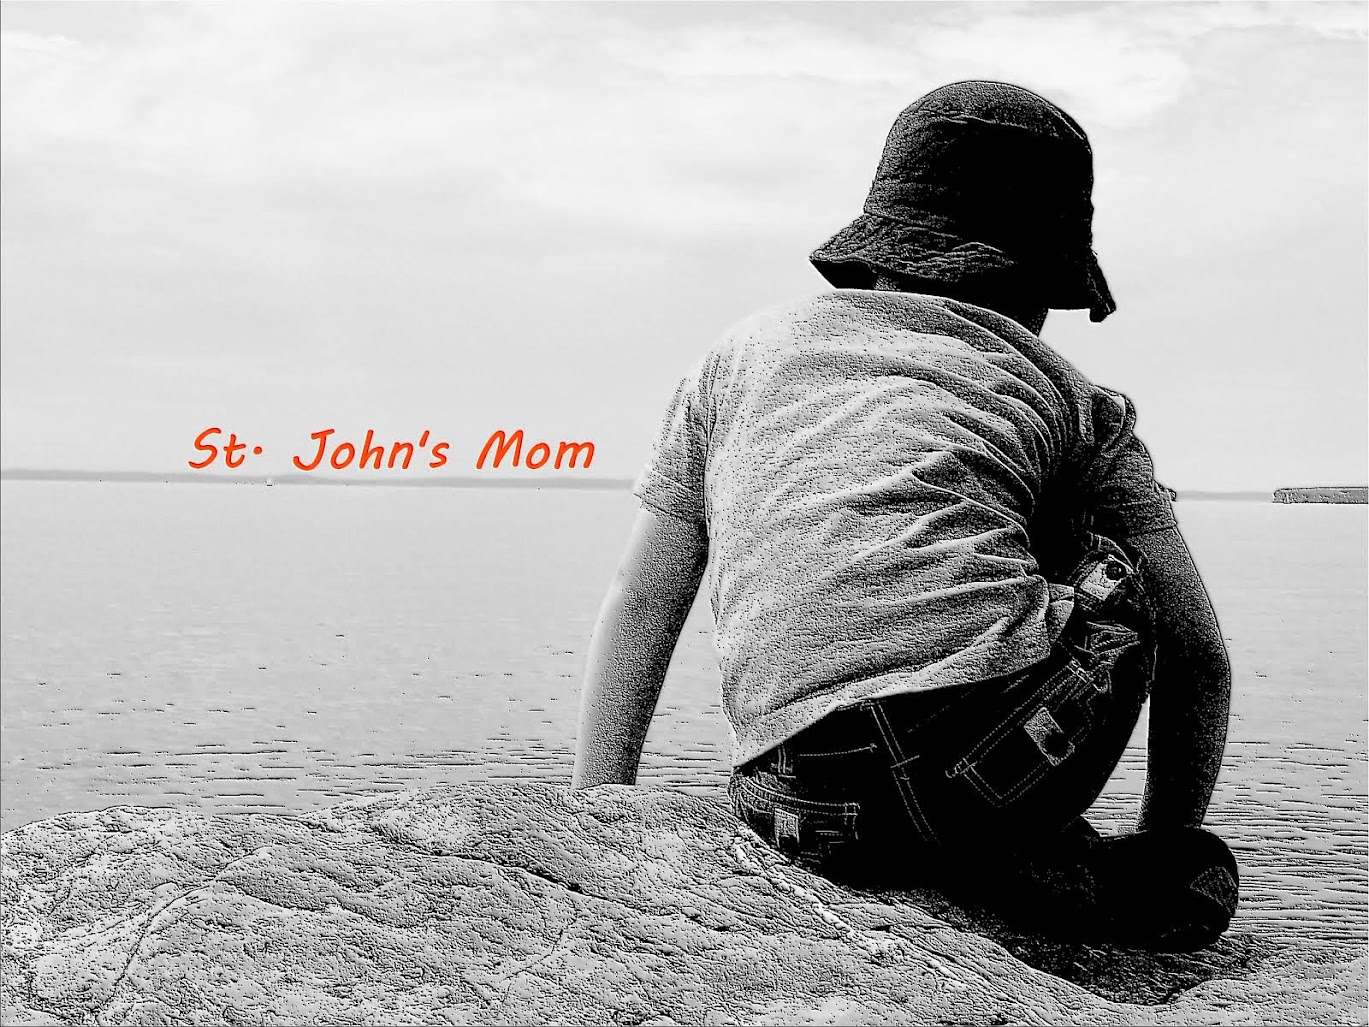 St. John's Mom